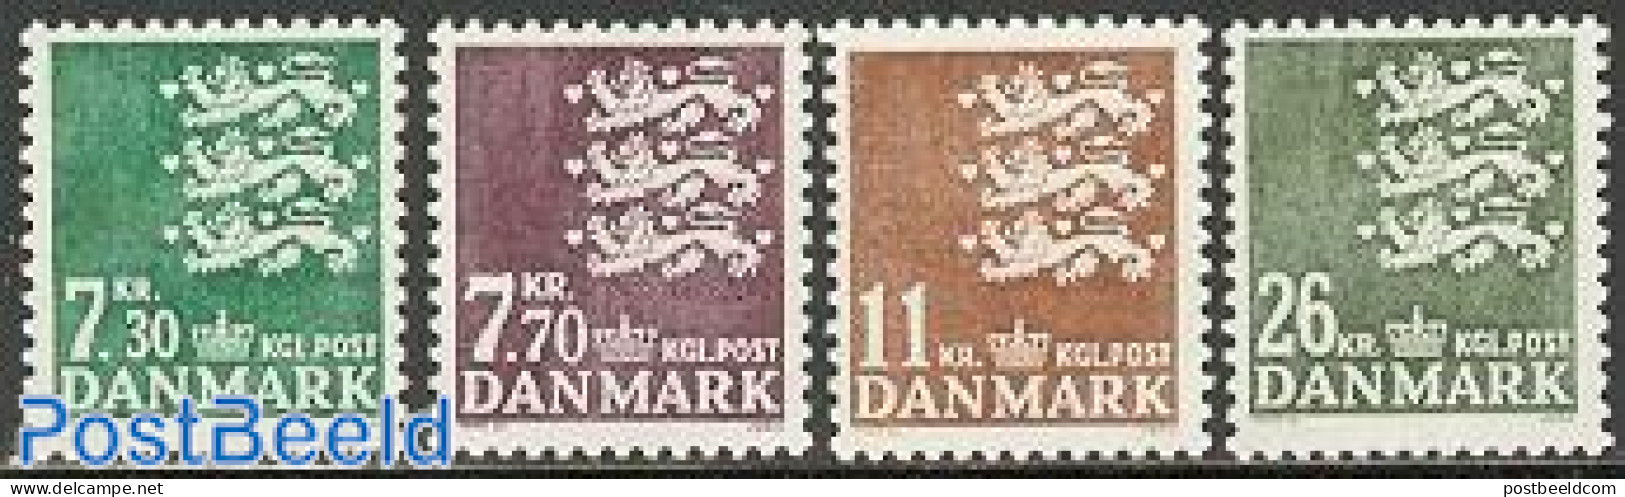 Denmark 1989 Definitives 4v, Mint NH - Unused Stamps